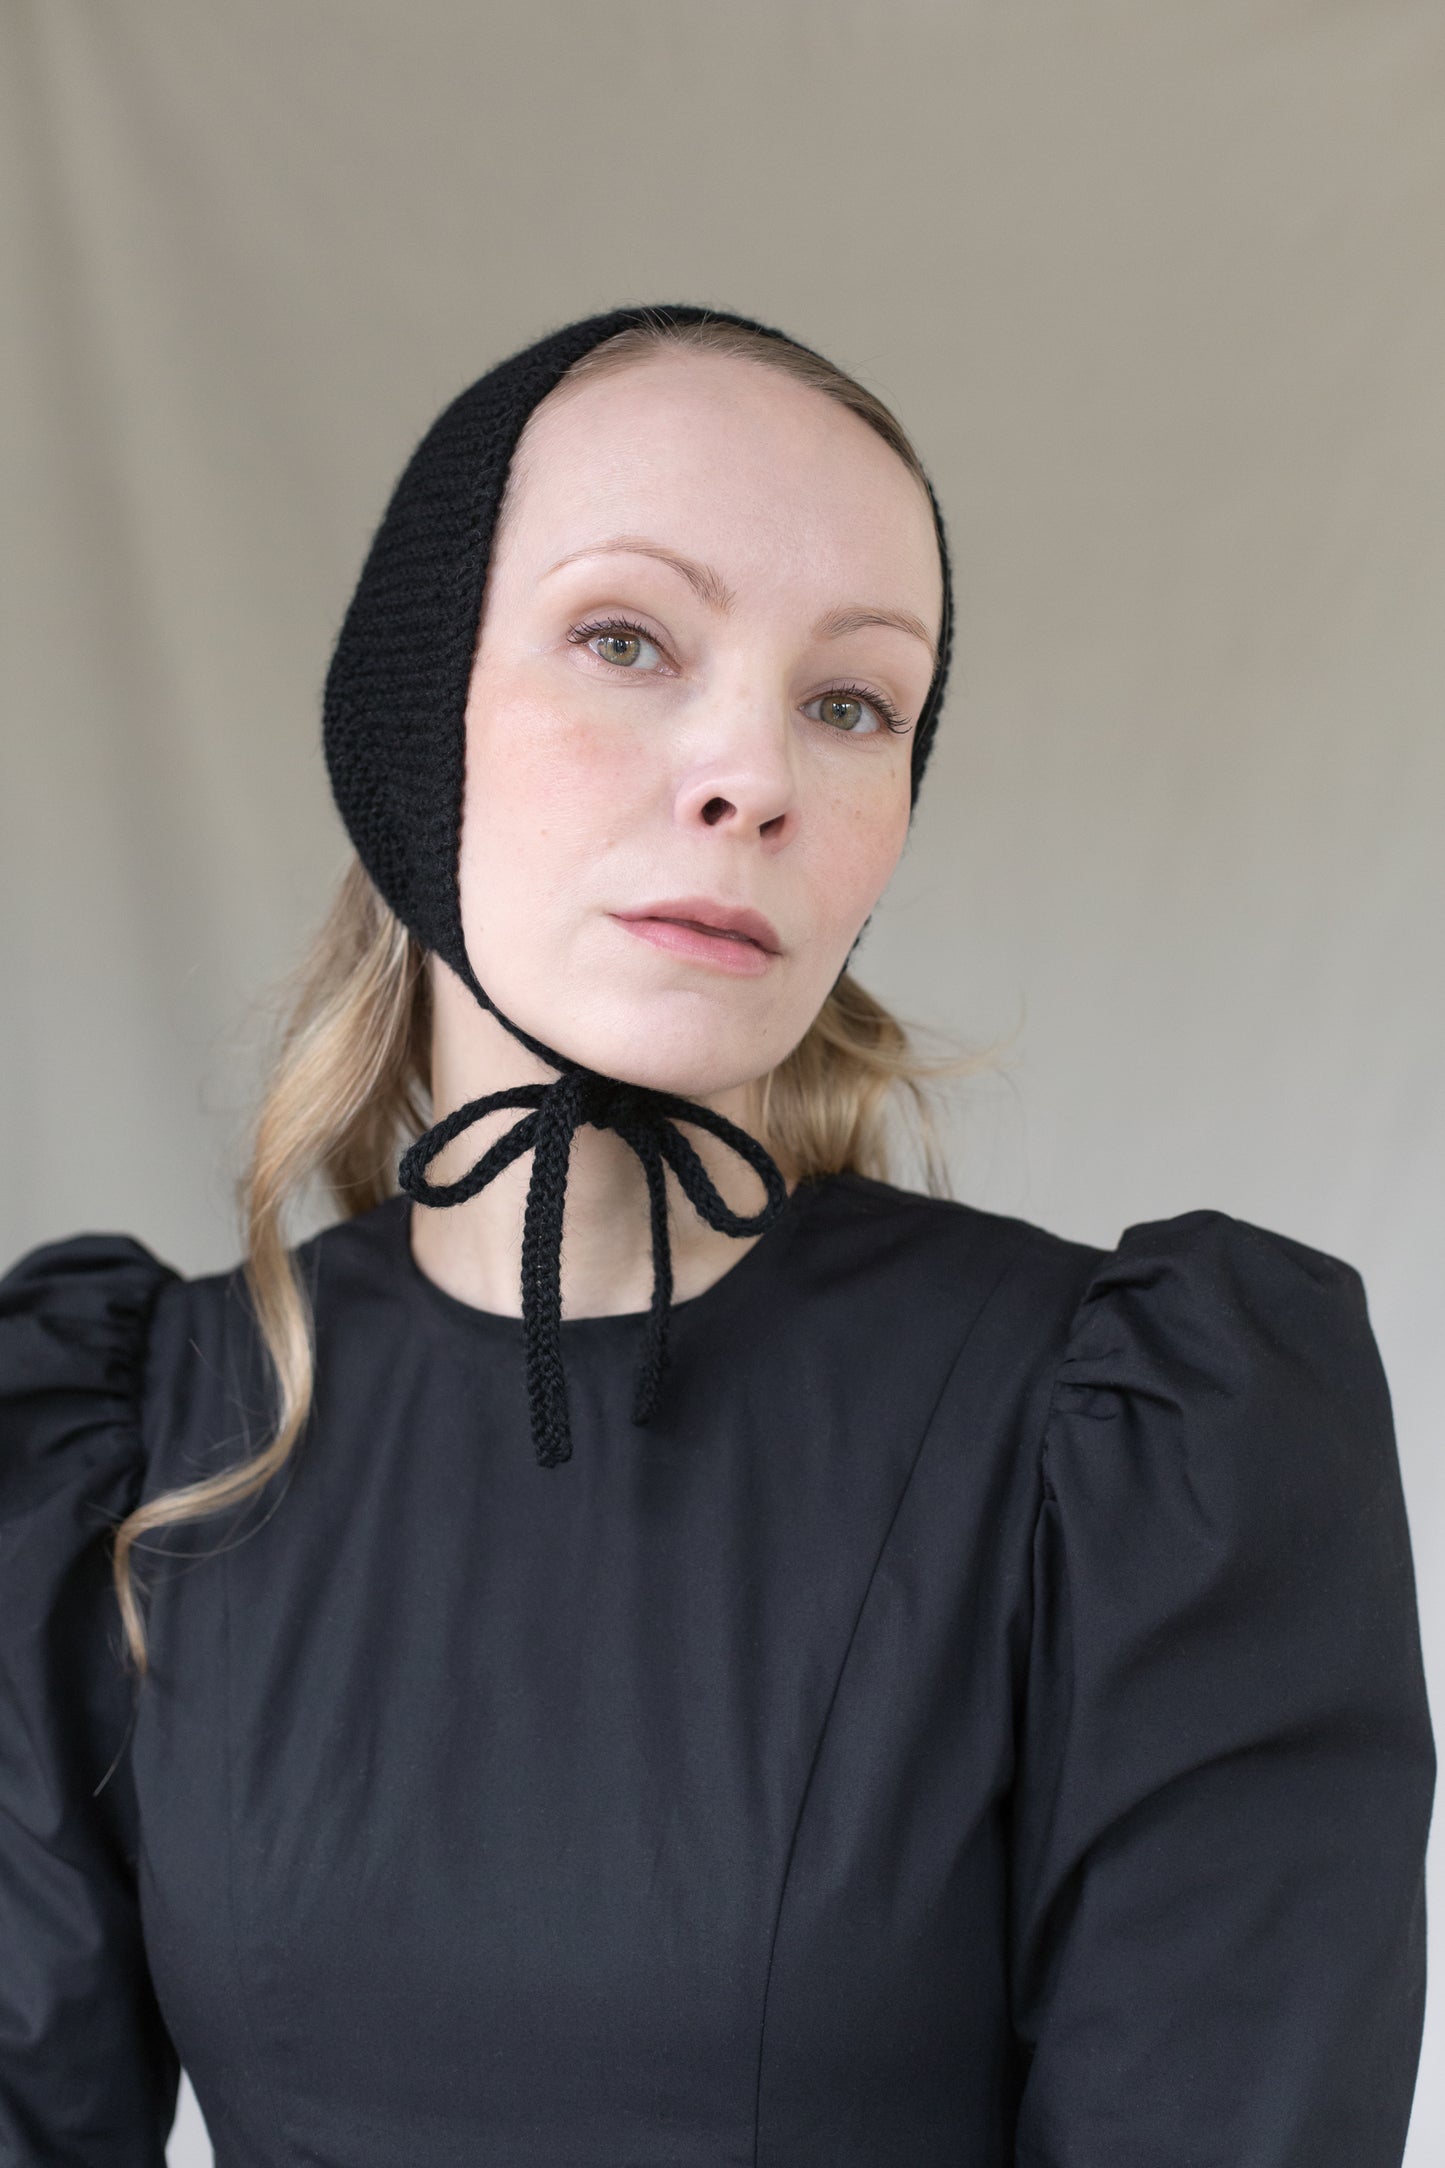 Juliet bonnet in black